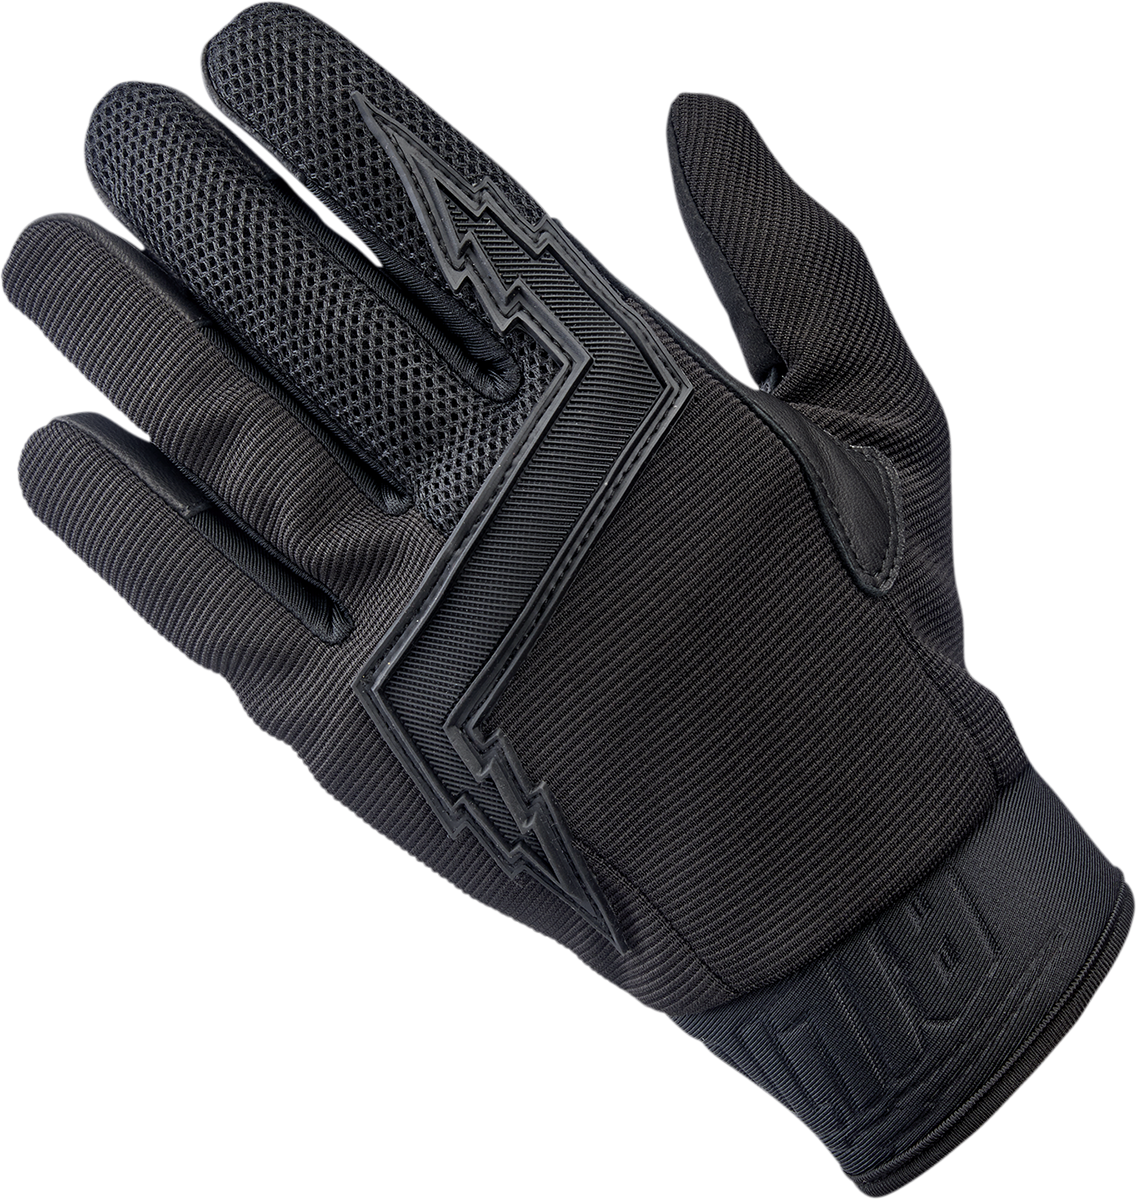 BILTWELL Baja Gloves - Black Out - Small 1508-0101-302